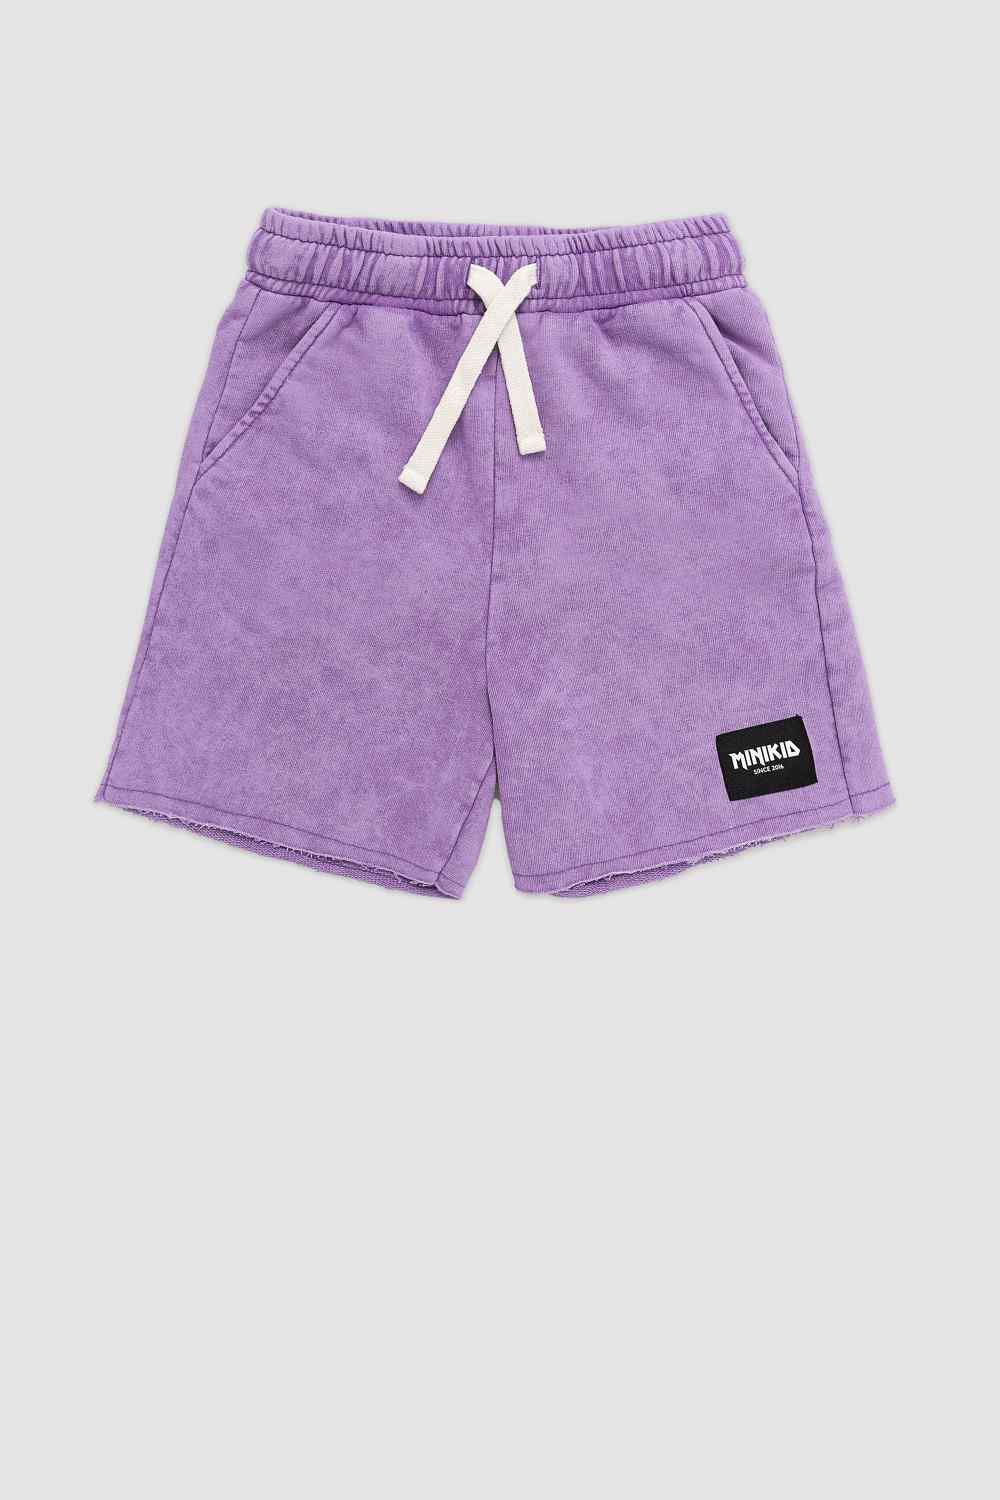 Violet Comfort Fit Shorts